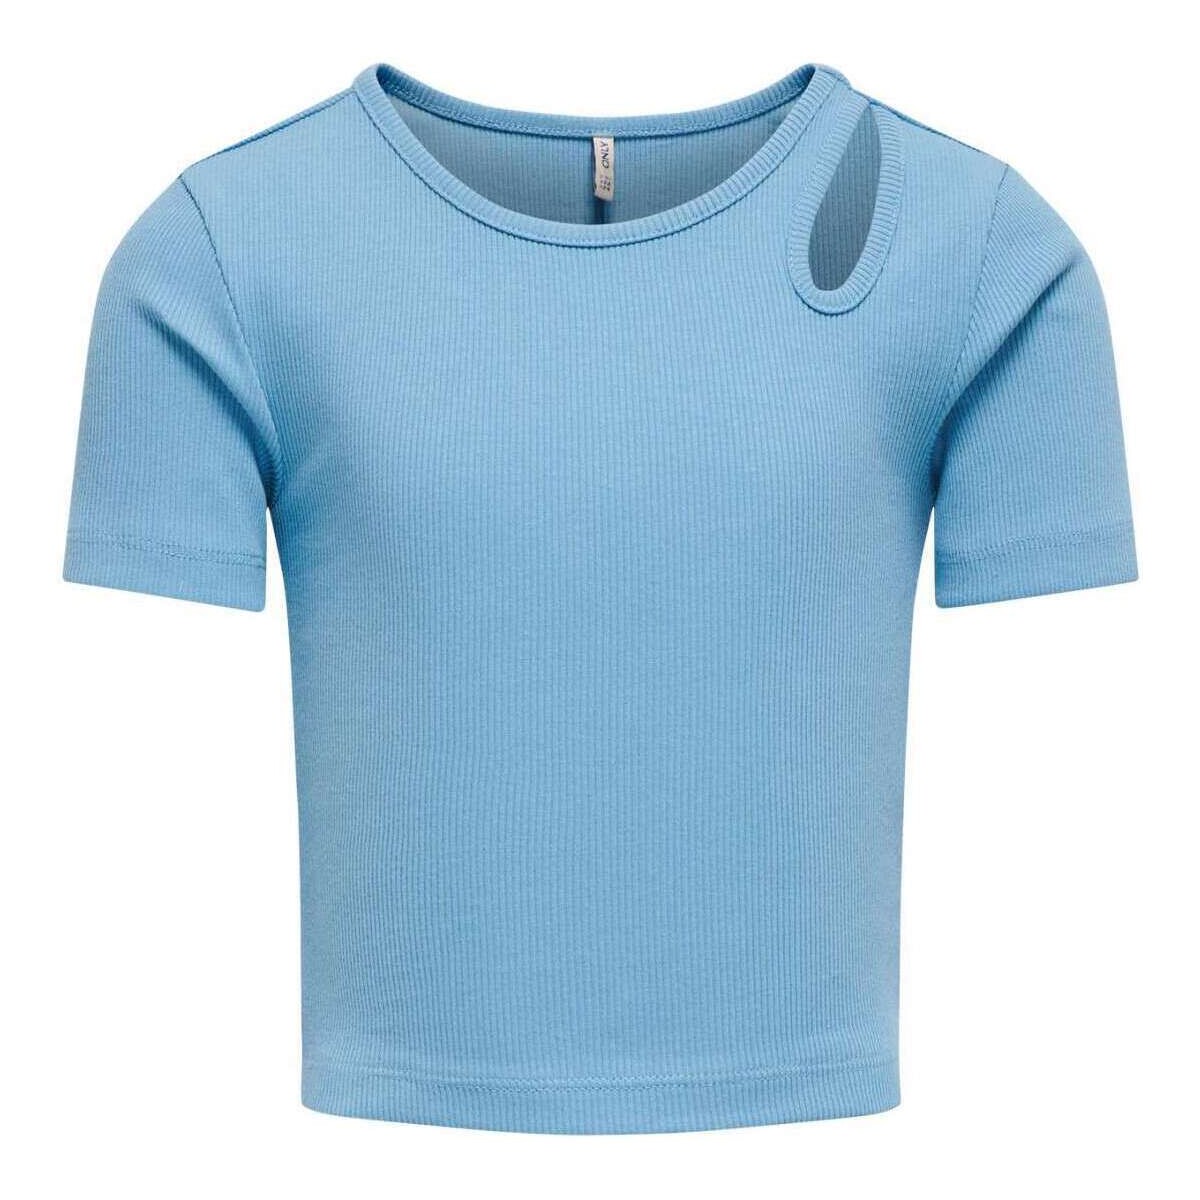 Vêtements Fille T-shirts manches courtes Only 162102VTPE24 Bleu